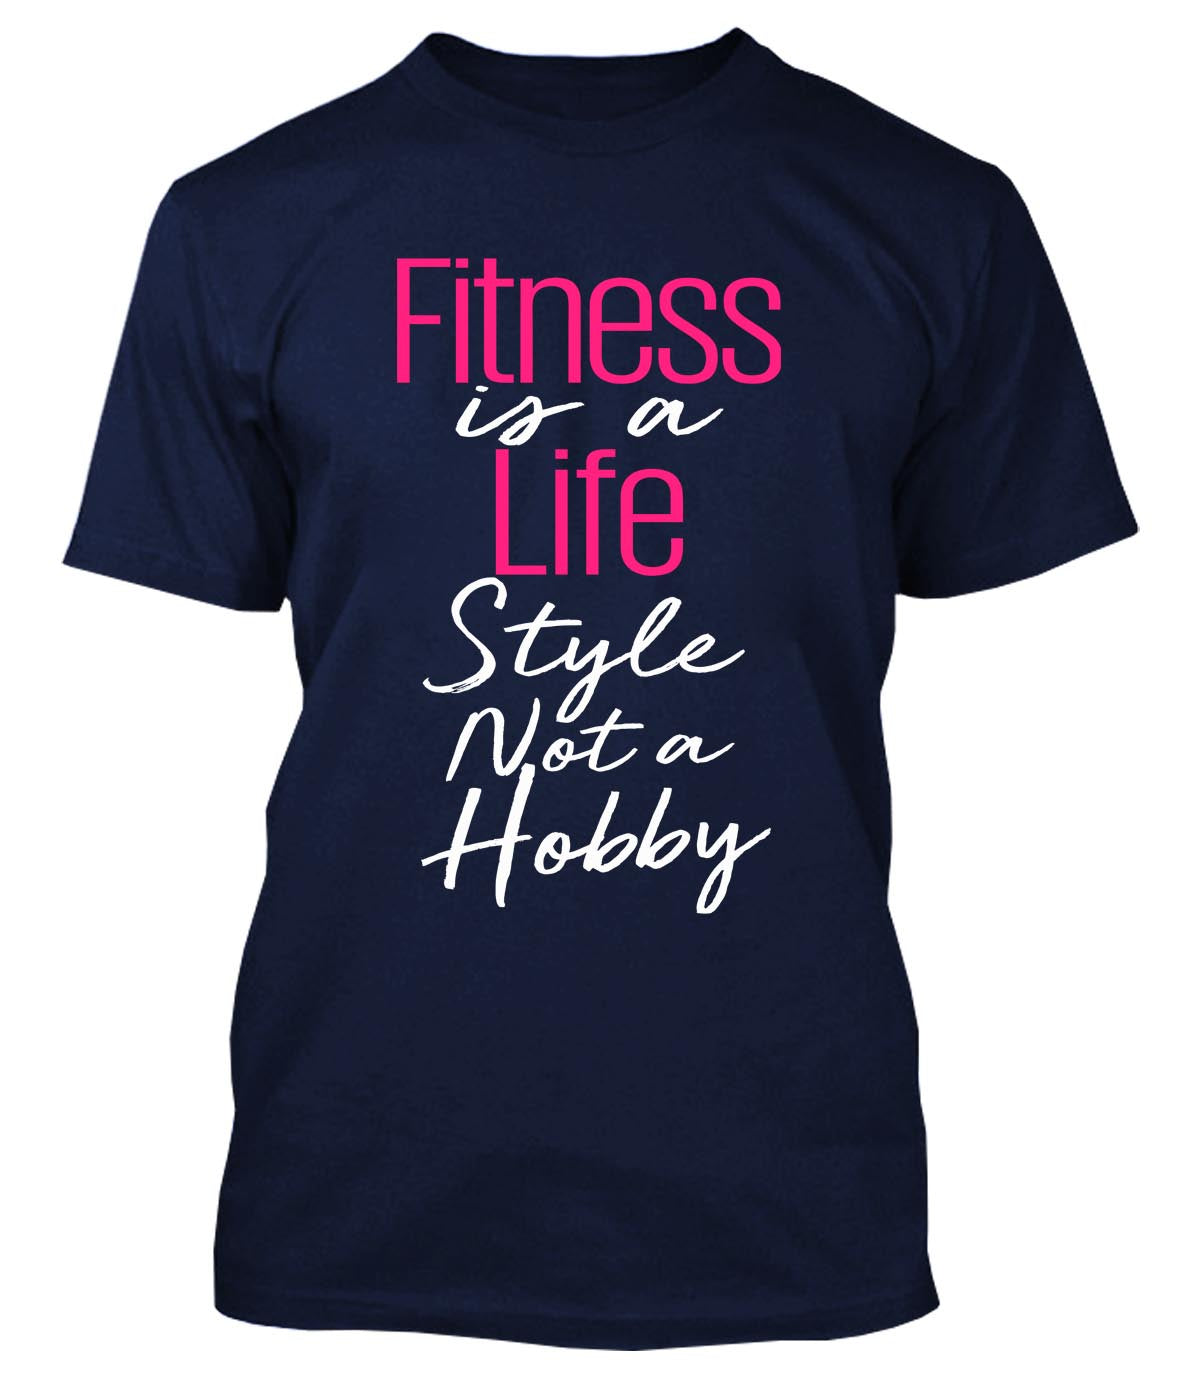 Fitness ist ein Lebensstil, kein Hobby 